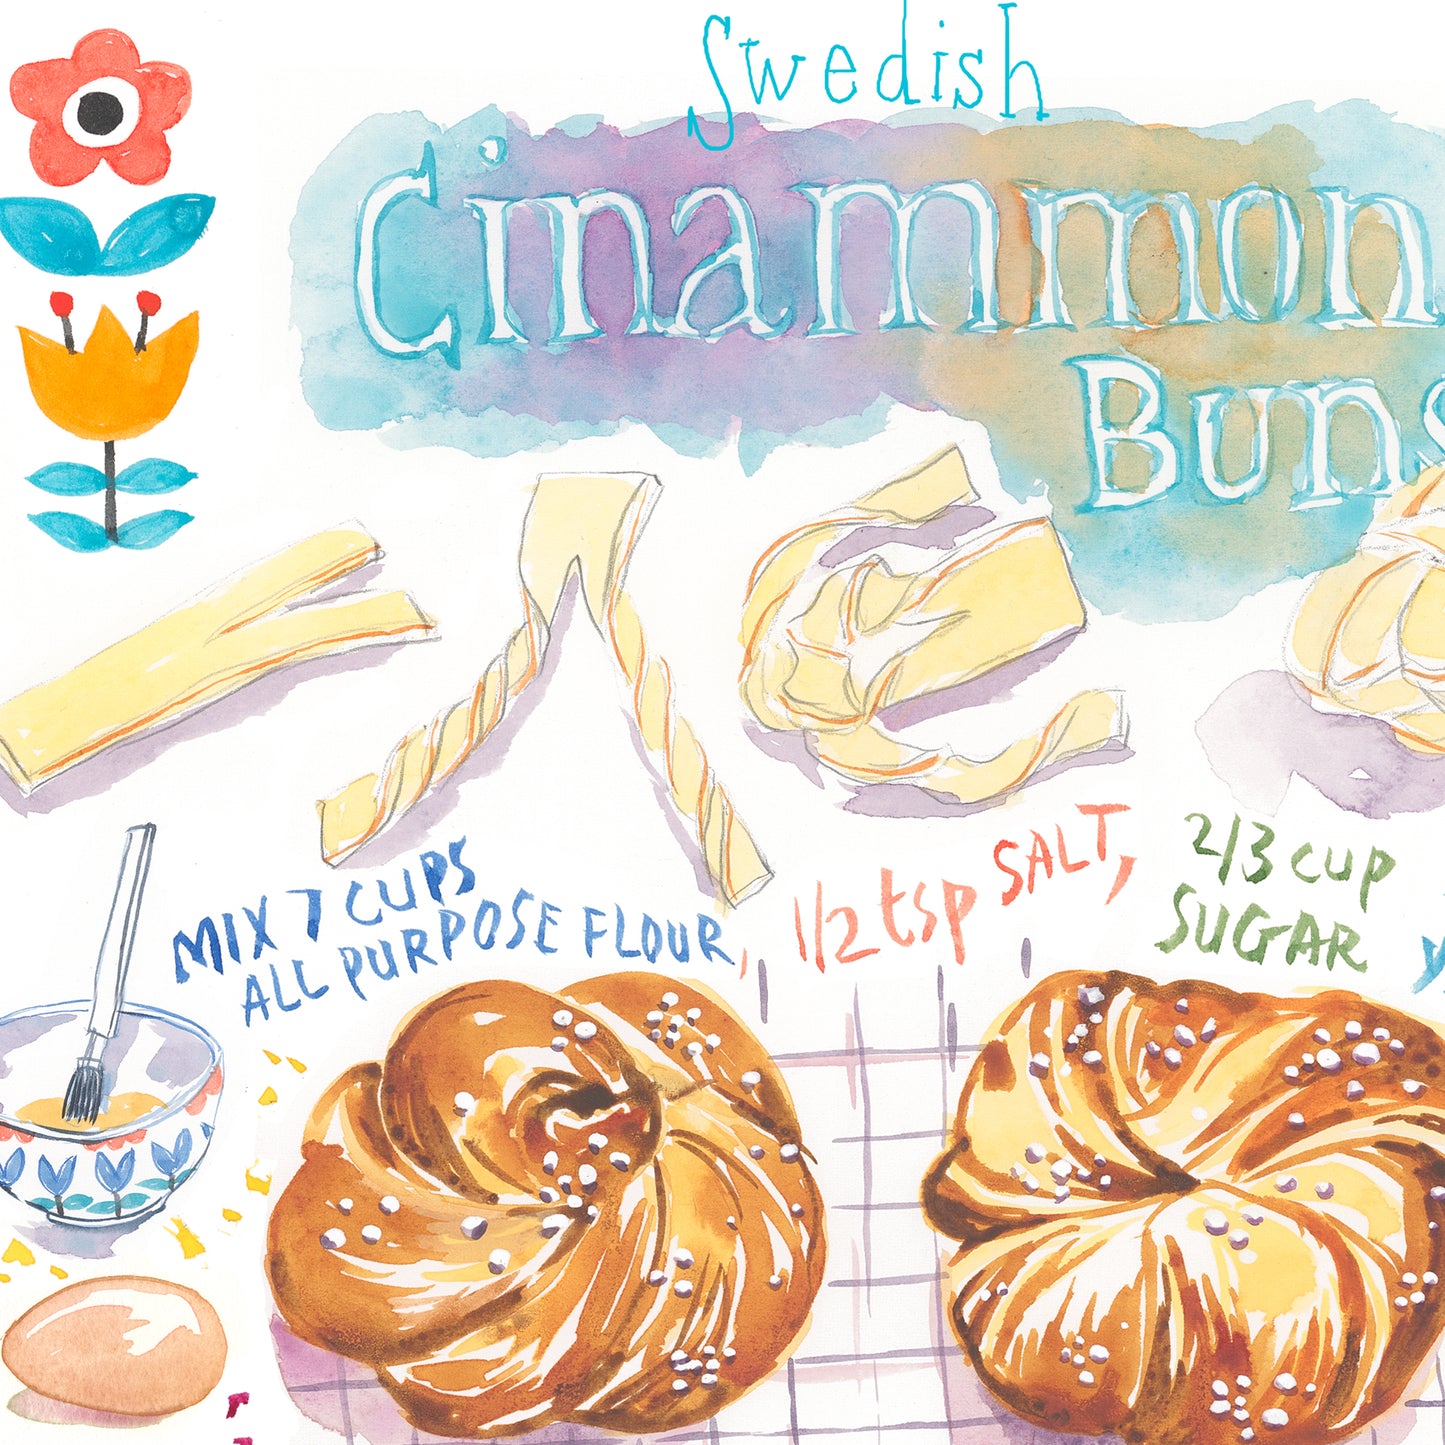 Swedish Cinnamon Buns